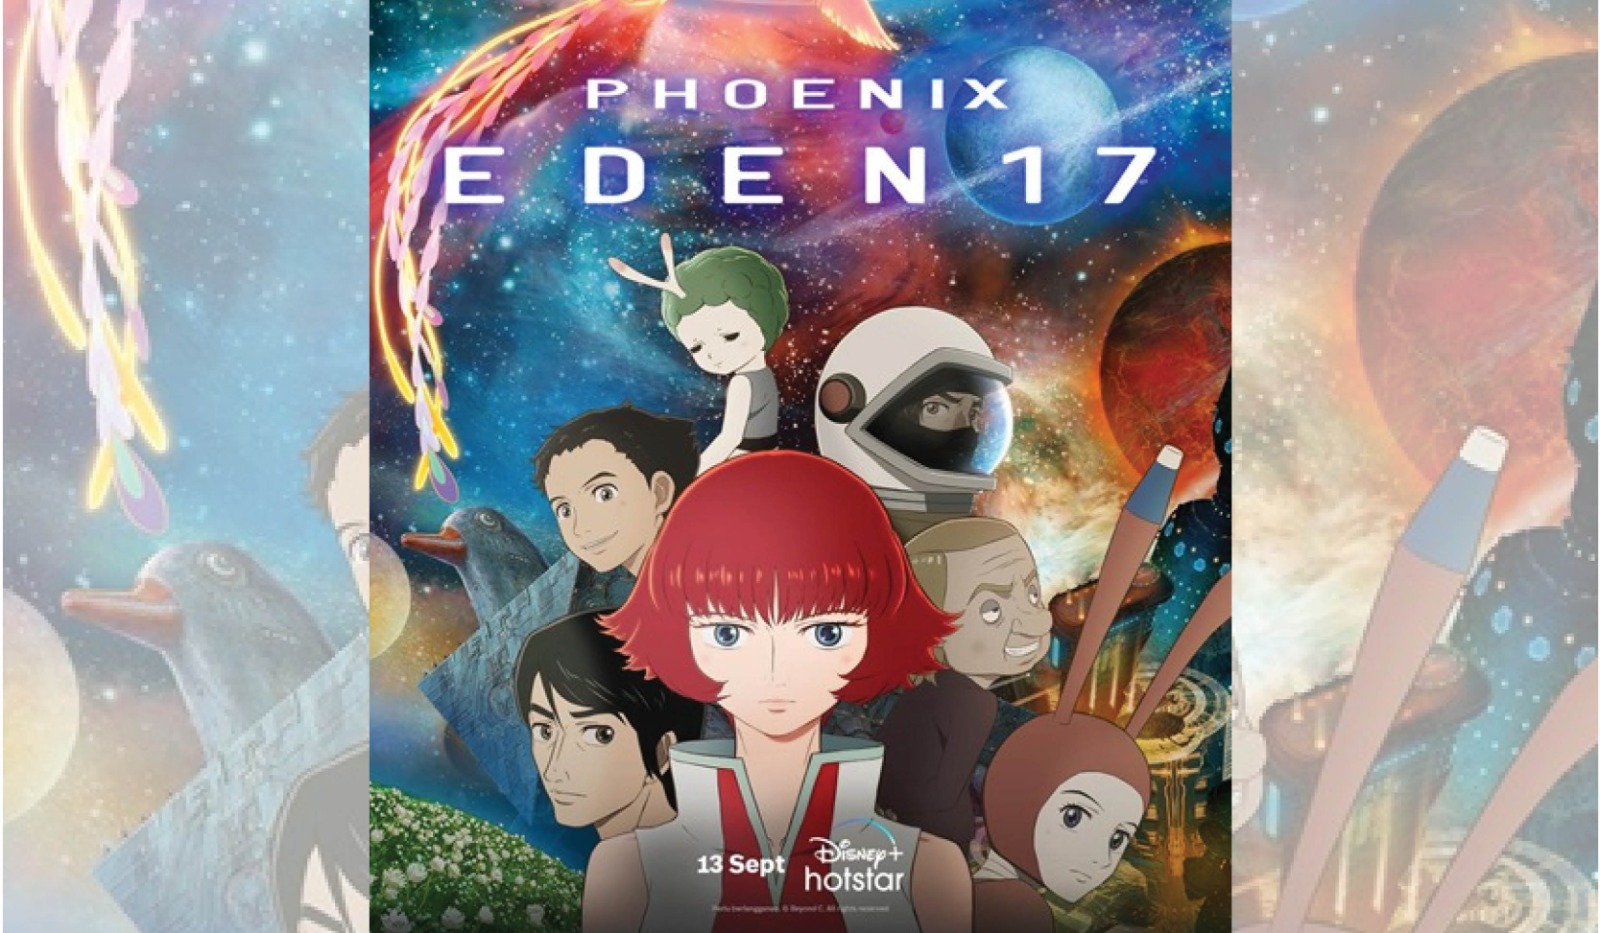 Rilis Trailer Terbaru! Anime Jepang ‘Phoenix: Eden17’ Tayang 13 September 2023 di Disney+ Hotstar